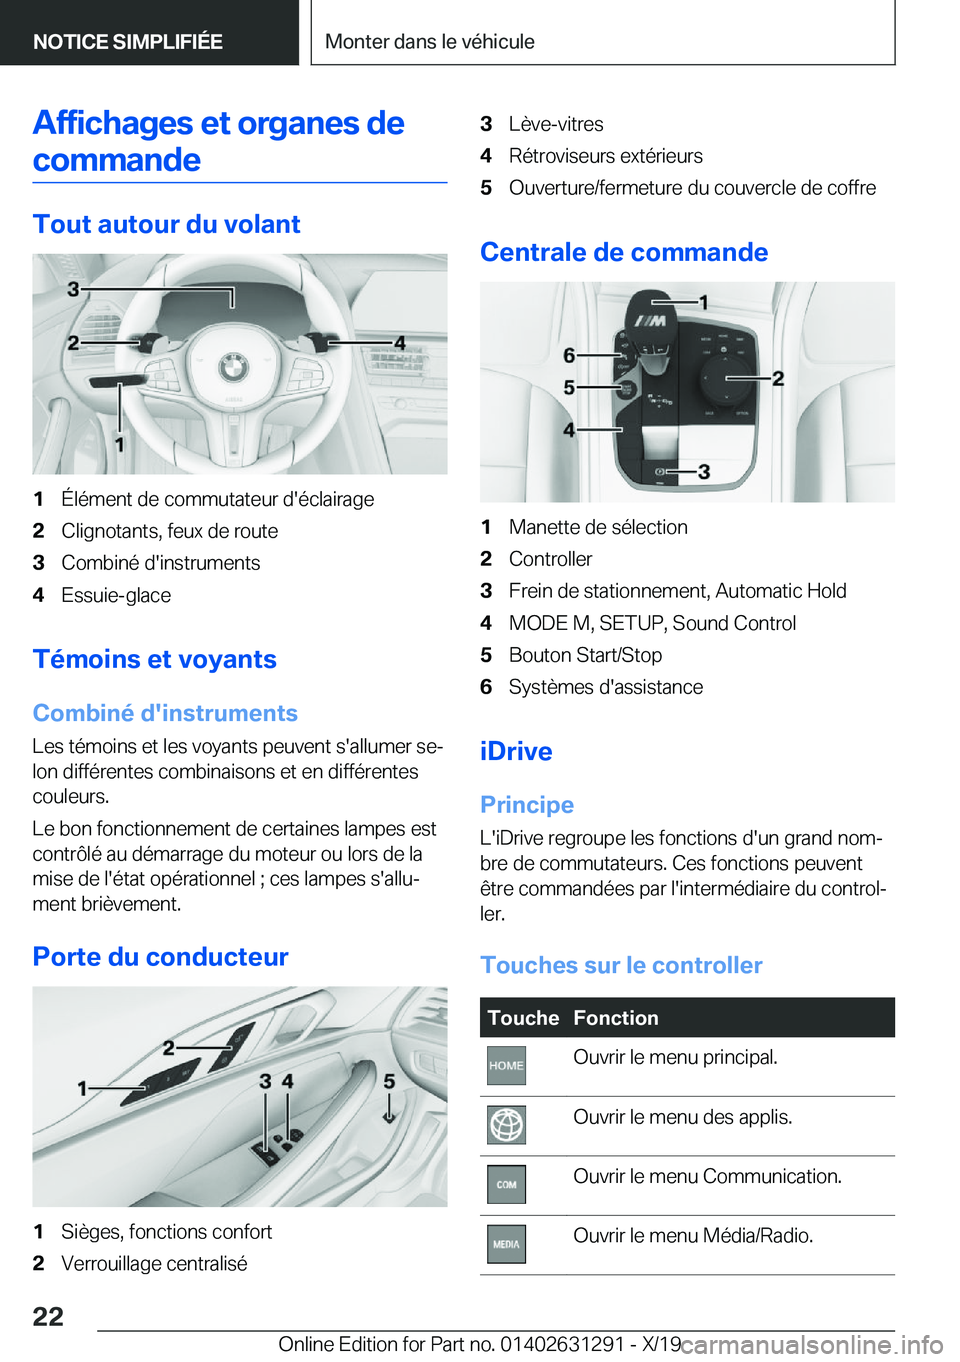 BMW M8 2020  Notices Demploi (in French) �A�f�f�i�c�h�a�g�e�s��e�t��o�r�g�a�n�e�s��d�e�c�o�m�m�a�n�d�e
�T�o�u�t��a�u�t�o�u�r��d�u��v�o�l�a�n�t
�1�